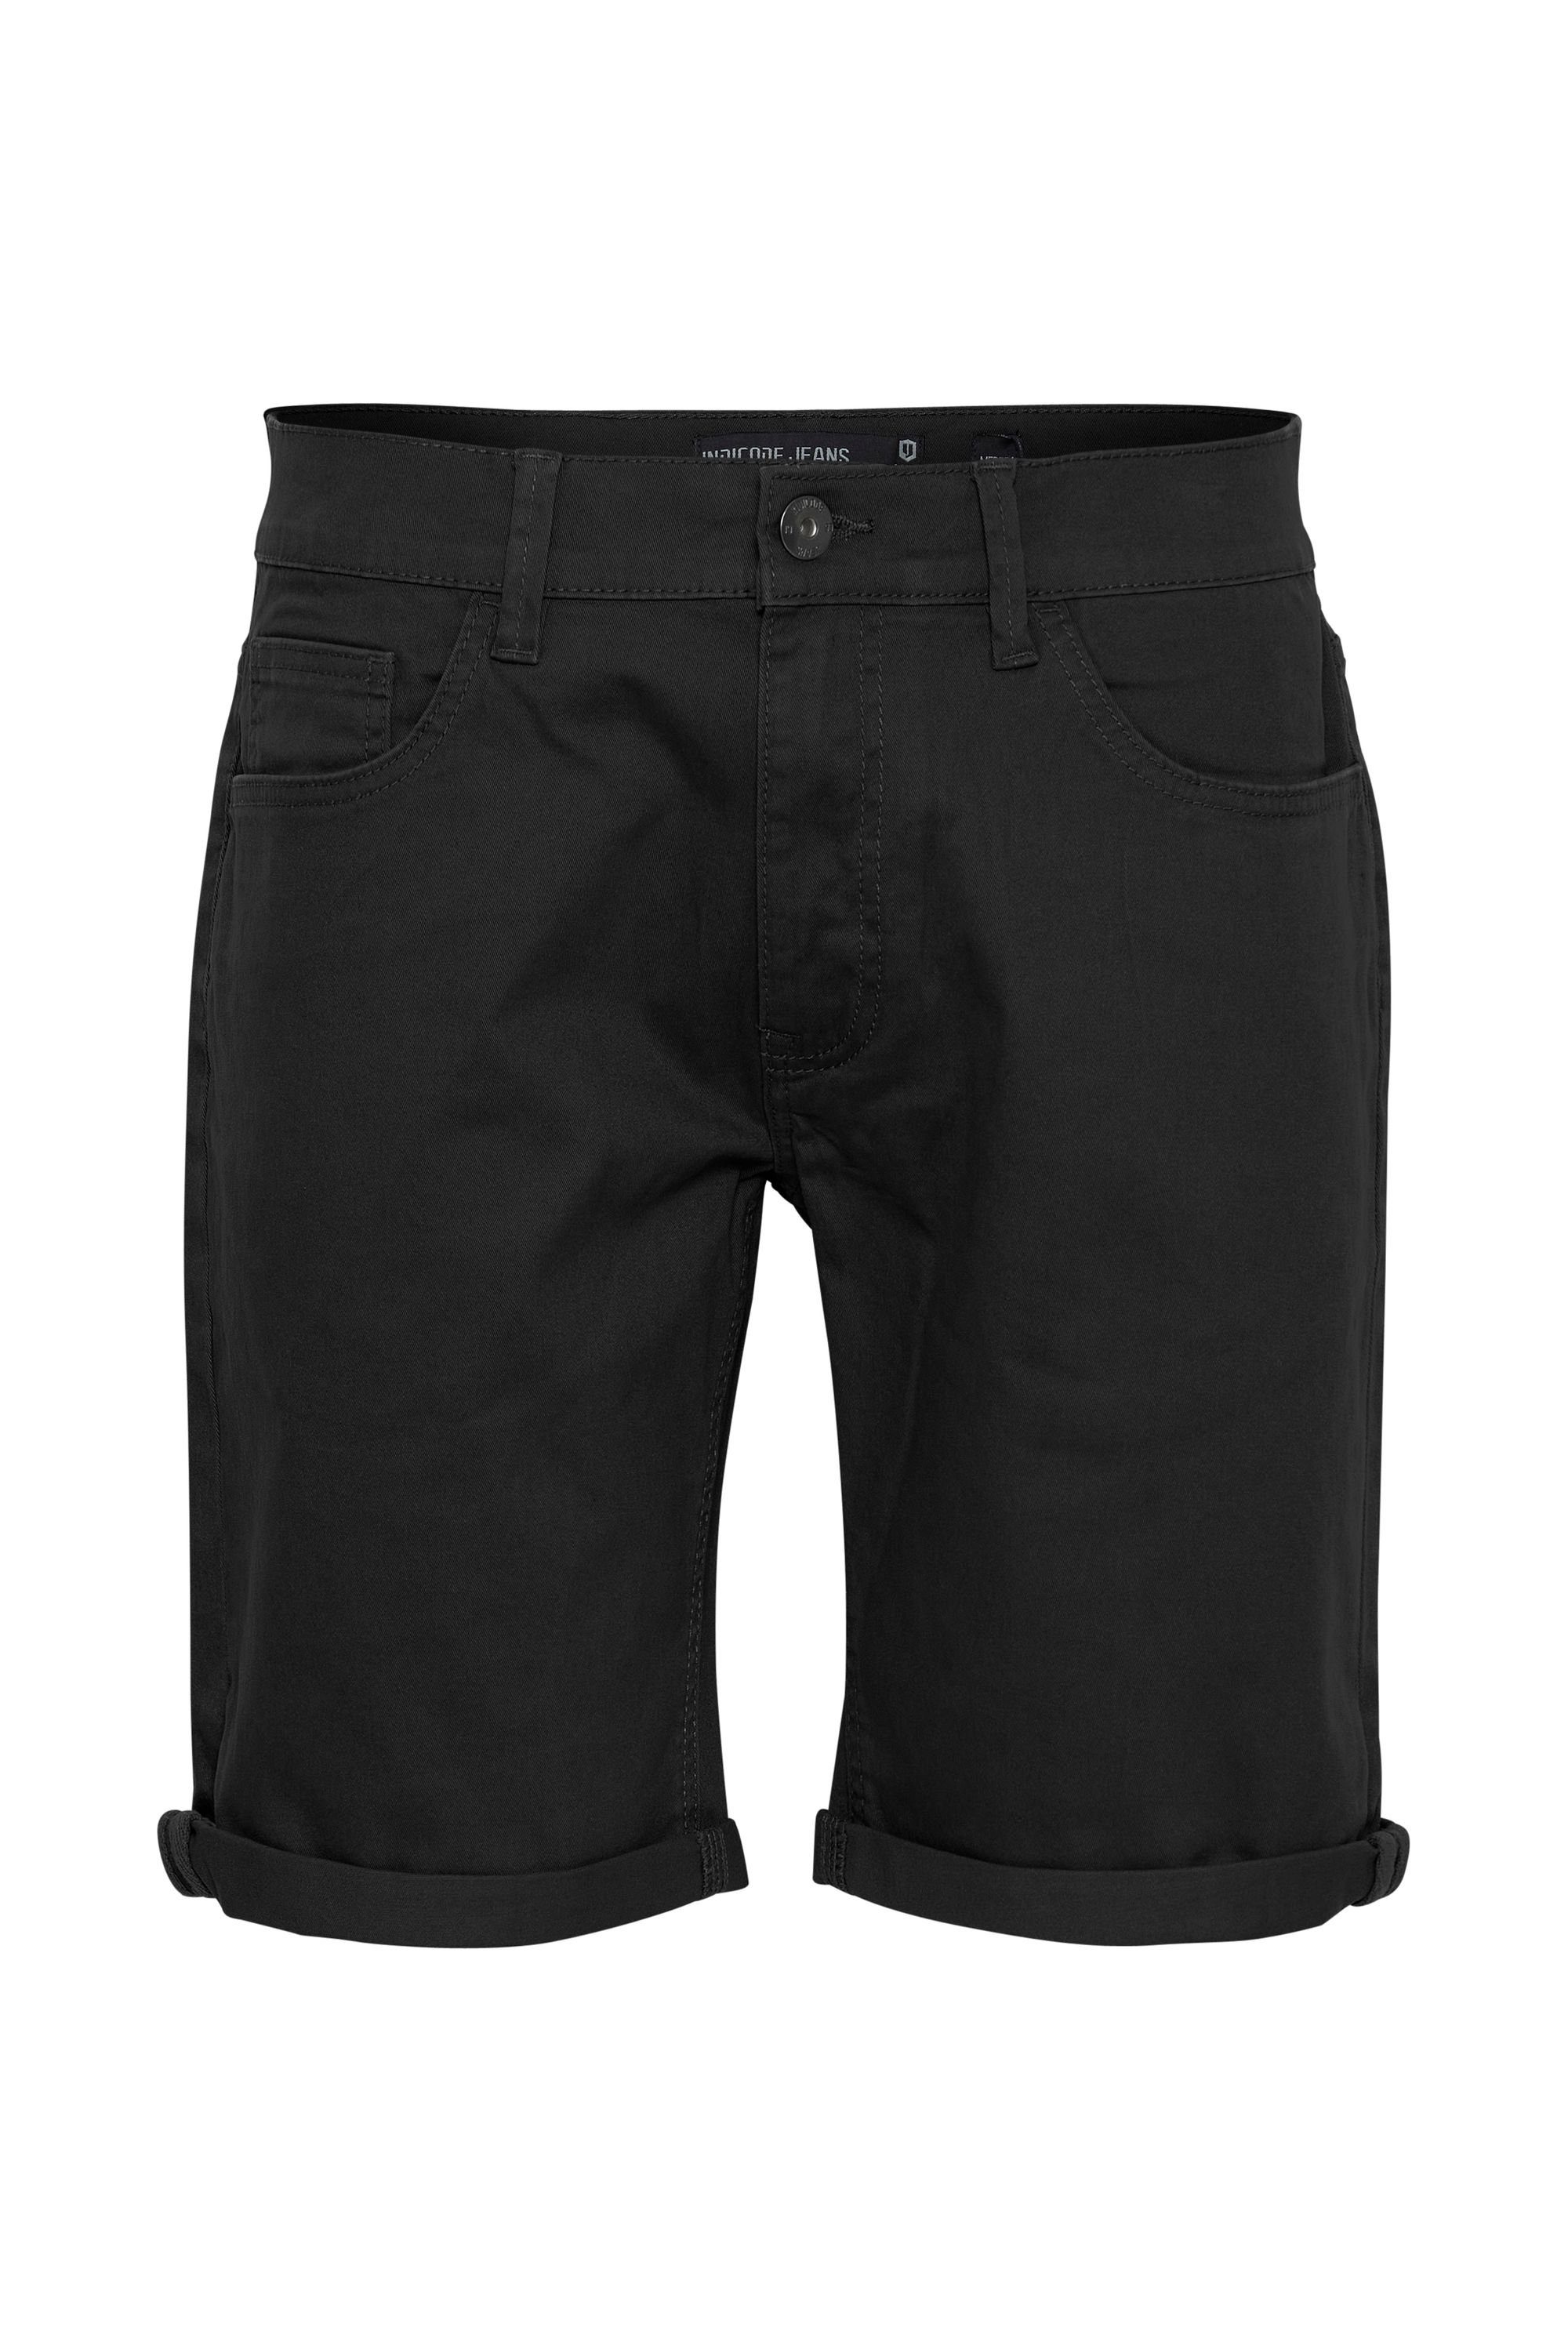 Indicode Shorts IDPokka (999) Black